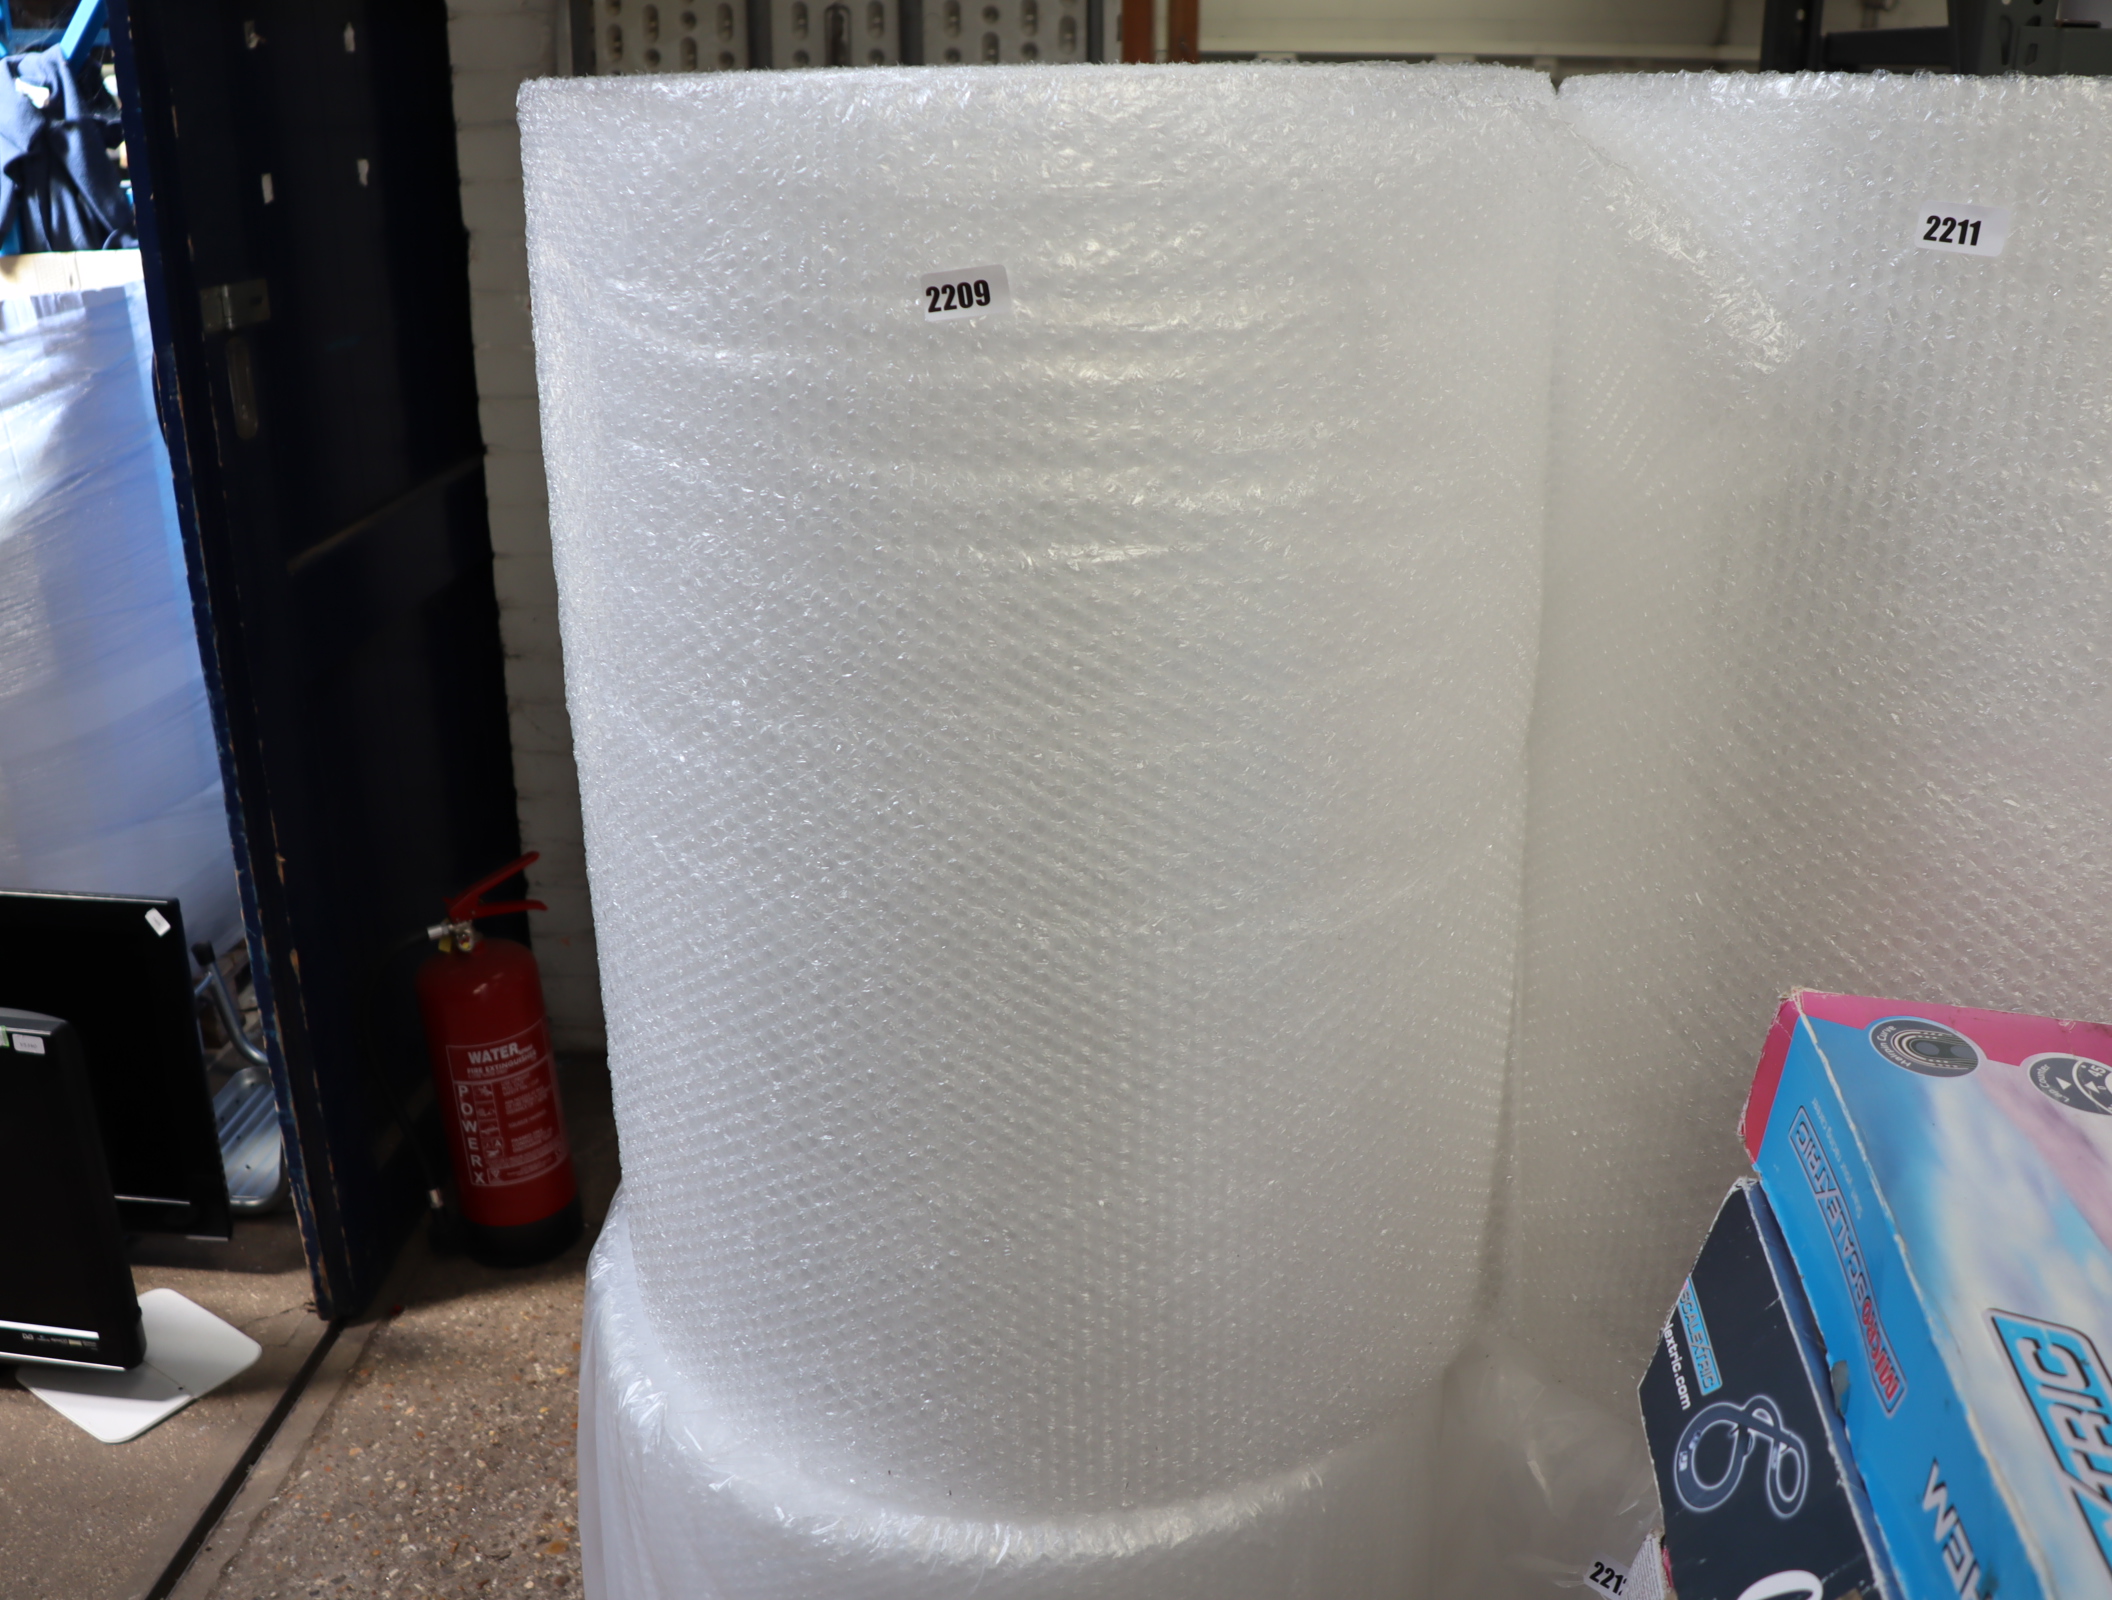 Large roll of bubblewrap